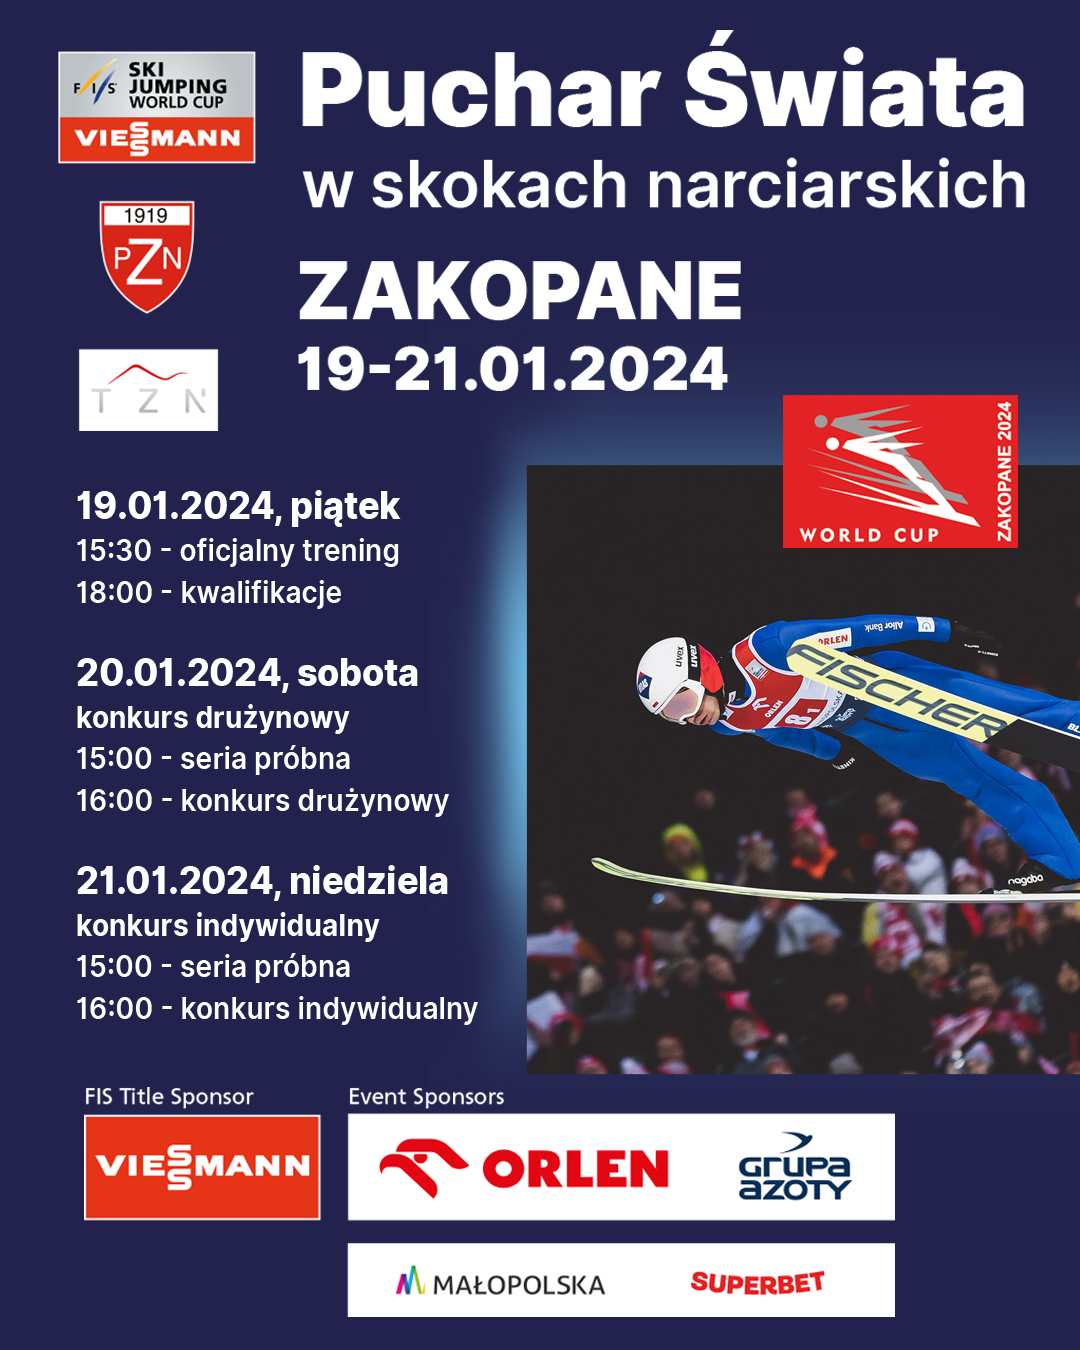 PS Zakopane - PolSKI Turniej 2024. Znamy program zawodów Pucharu Świata w Wiśle, Szczyrku i Zakopanem